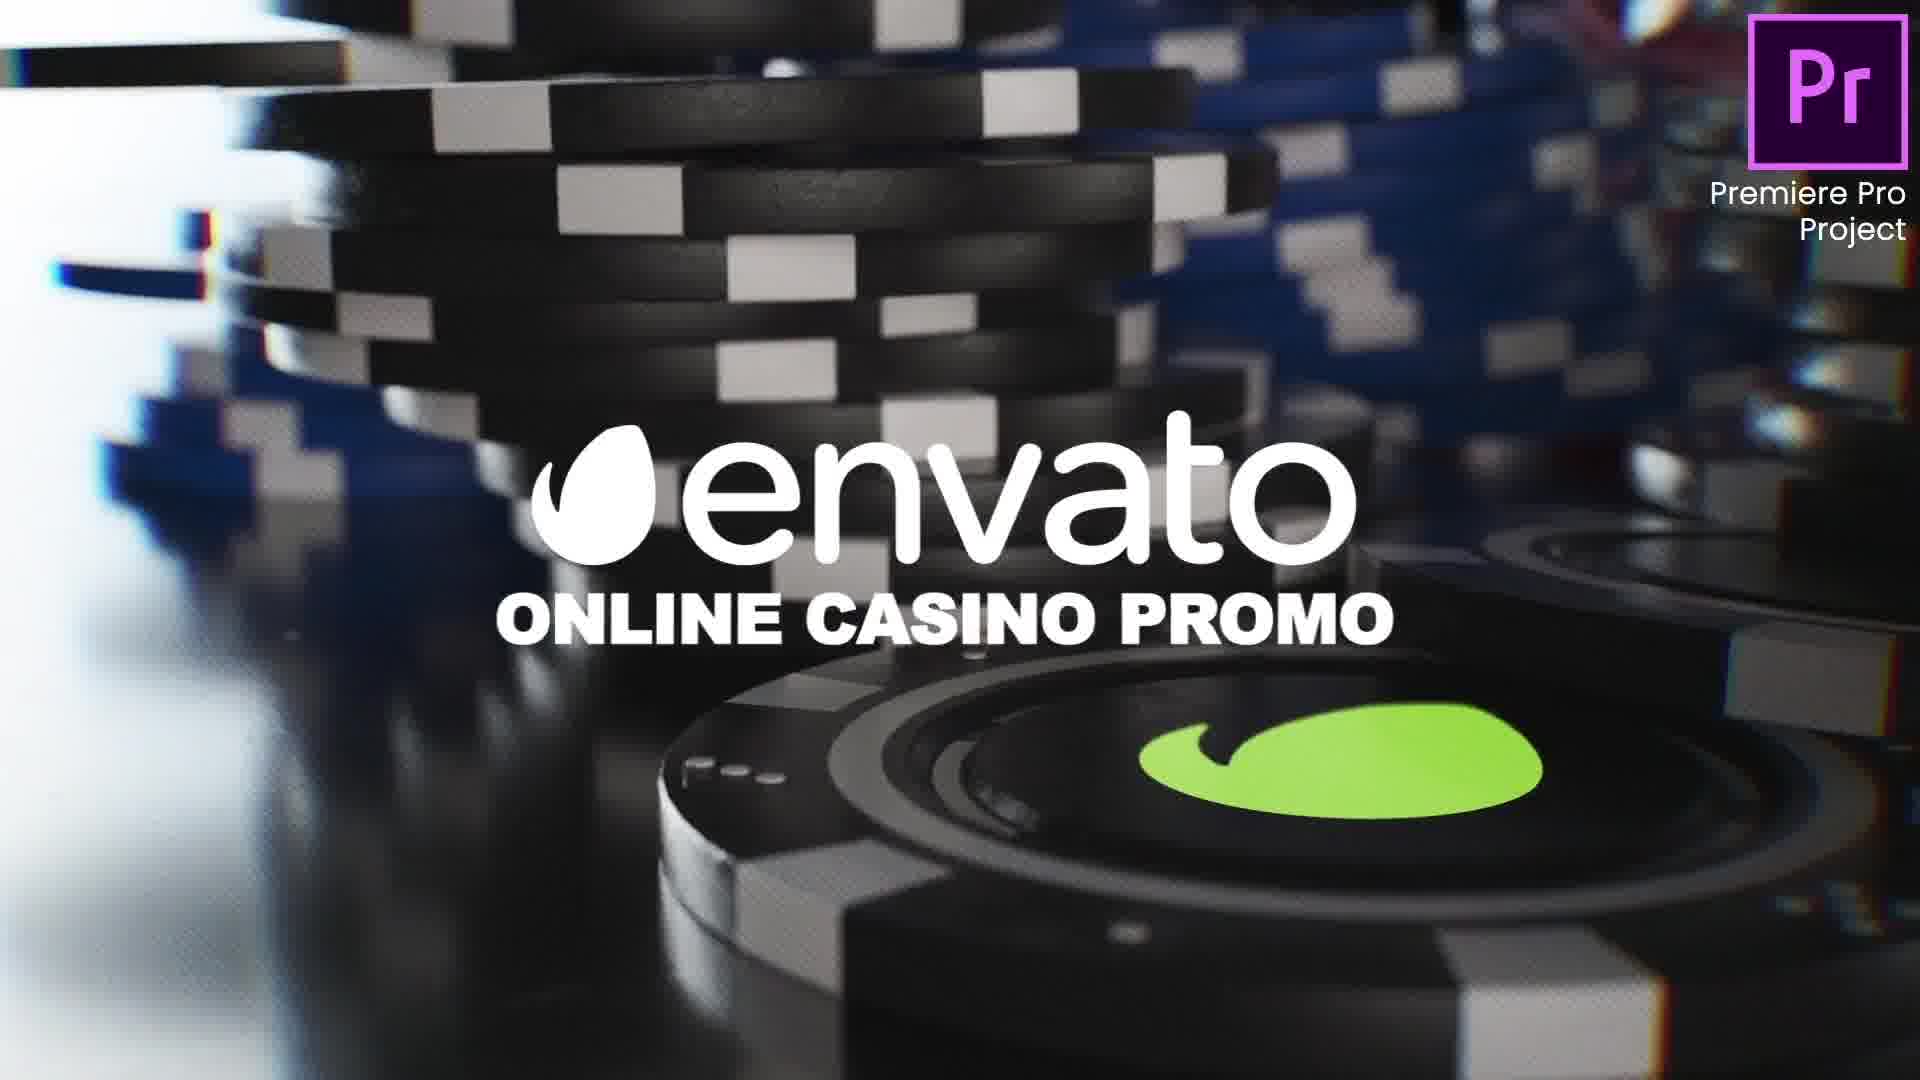 Online Casino Promo |Online Roulette Intro | Slot Machine Game| Poker App| Premiere Pro Videohive 33948684 Premiere Pro Image 13